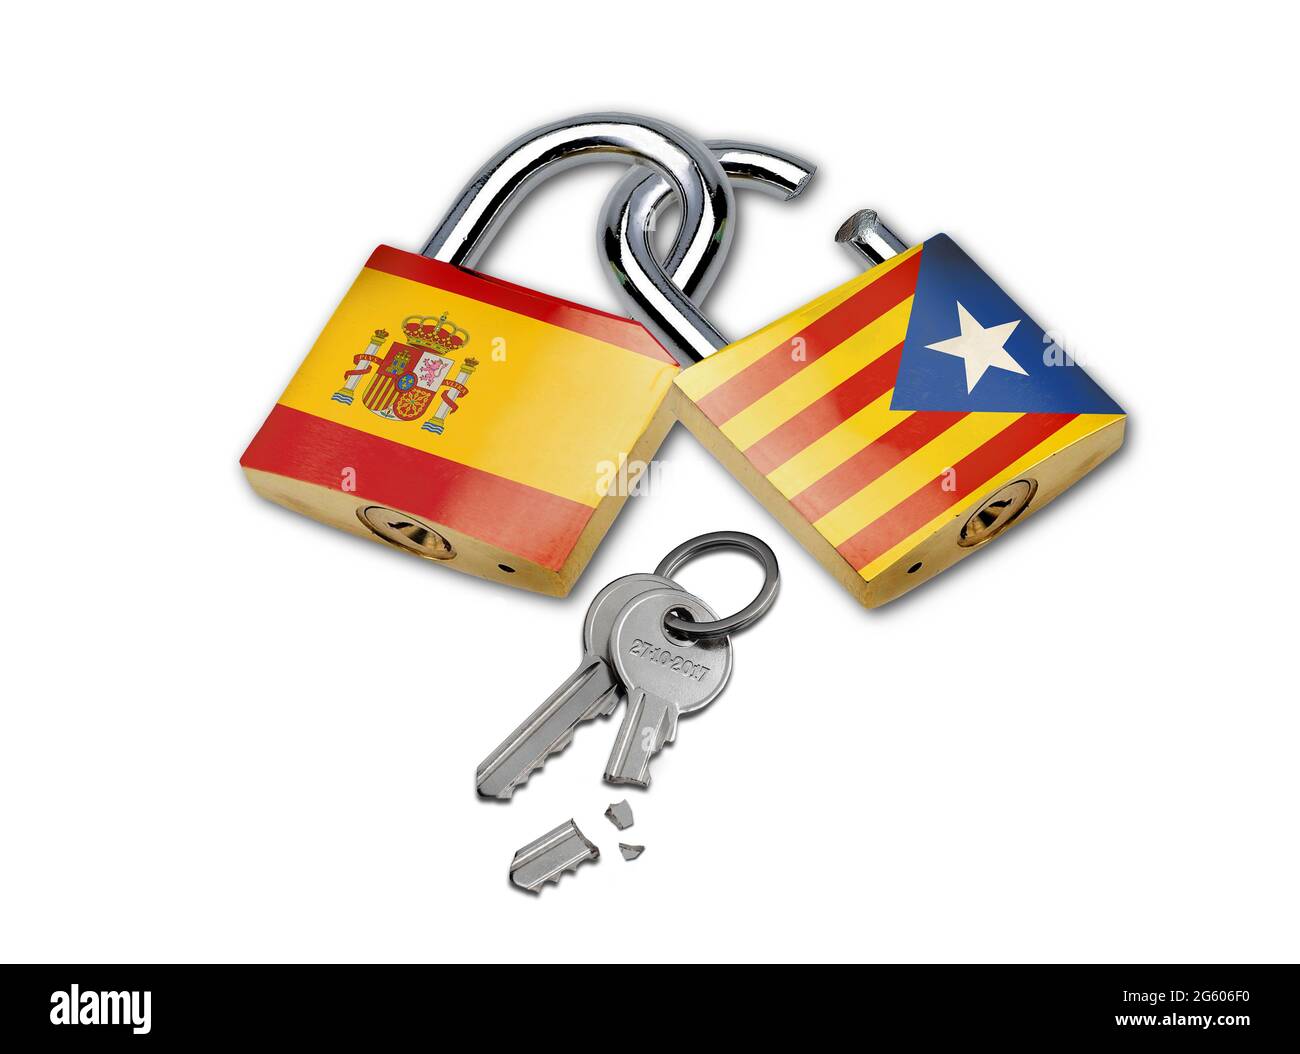 Cadenas emboîtés avec drapeau de l'Espagne et drapeau de la Catalogne isolé sur fond blanc. Image conceptuelle du conflit politique entre S Banque D'Images